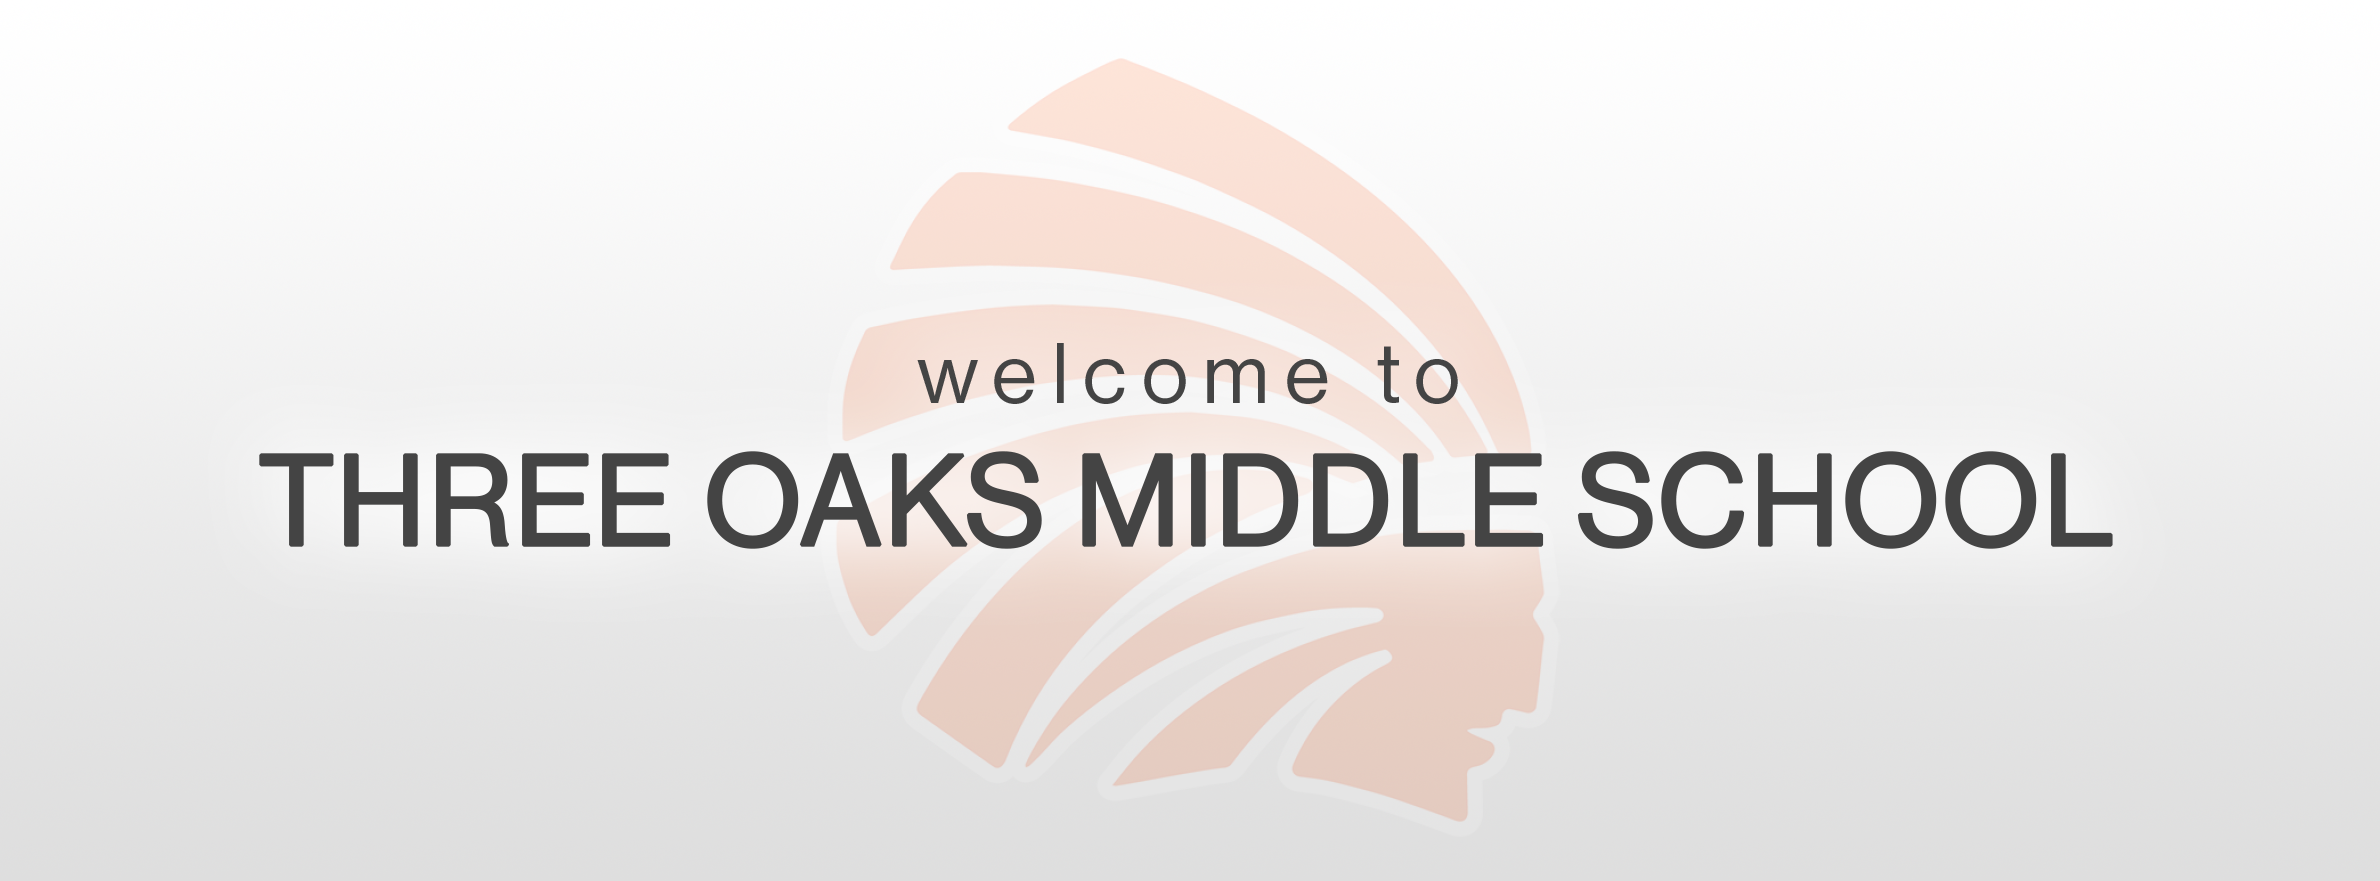 three oaks middle school